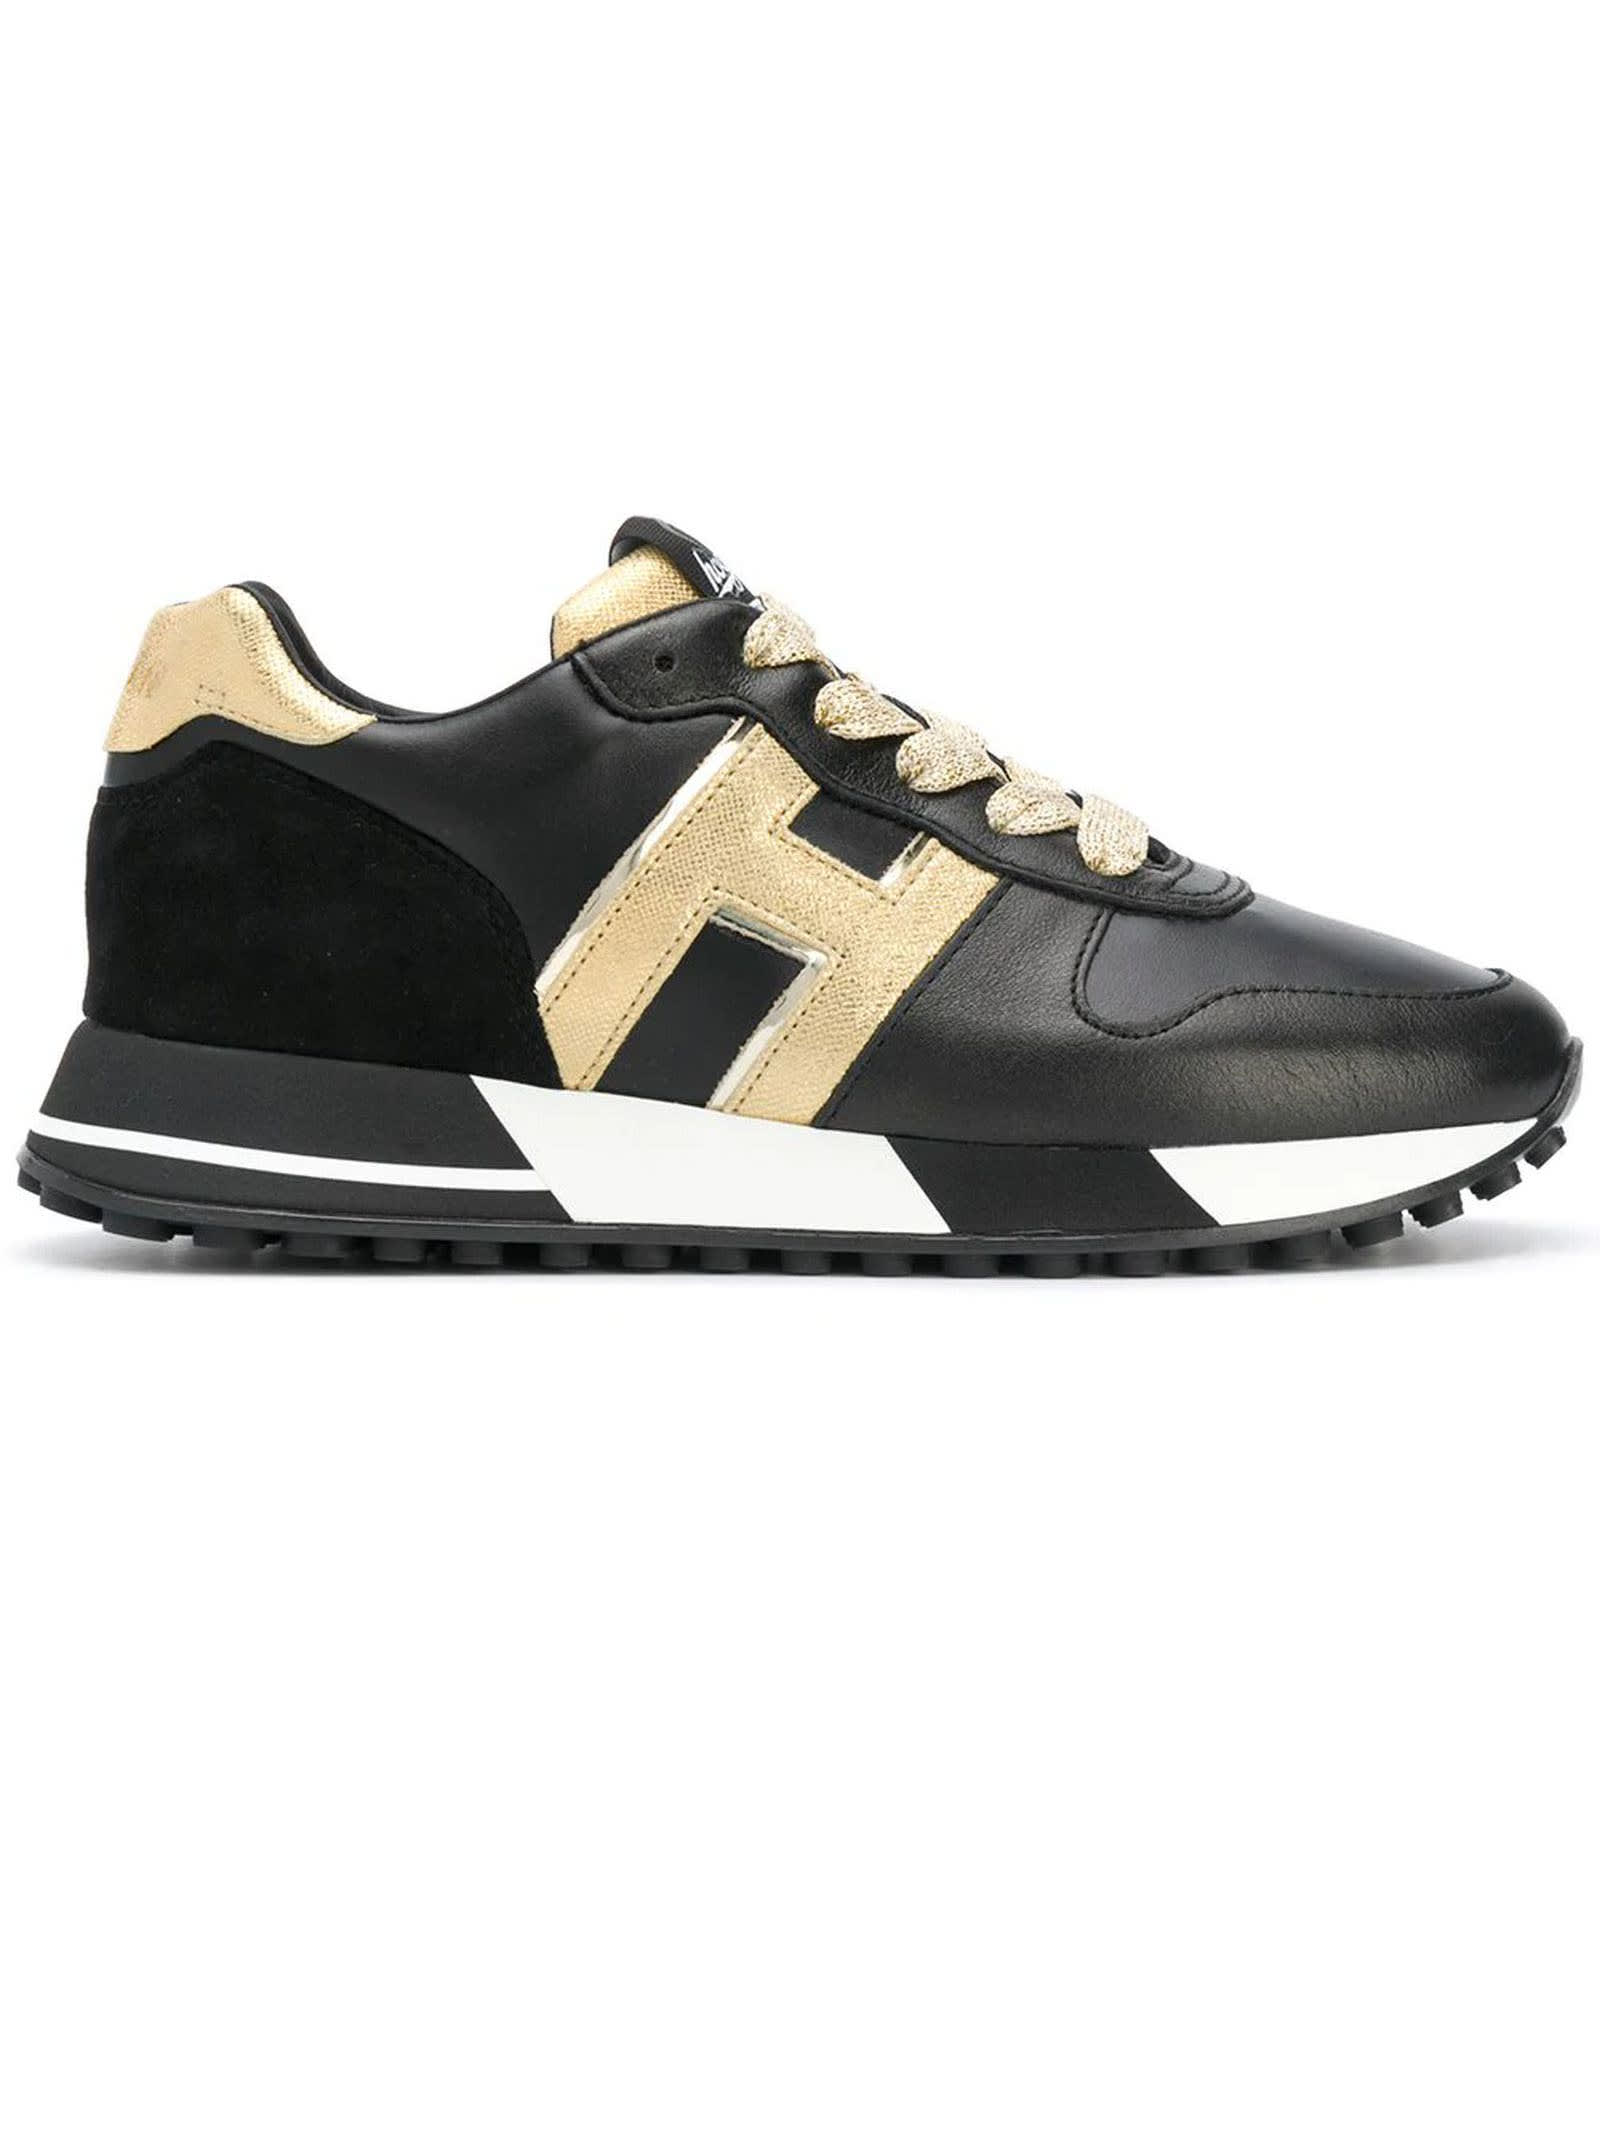 Hogan Sneakers H383 Black, Gold